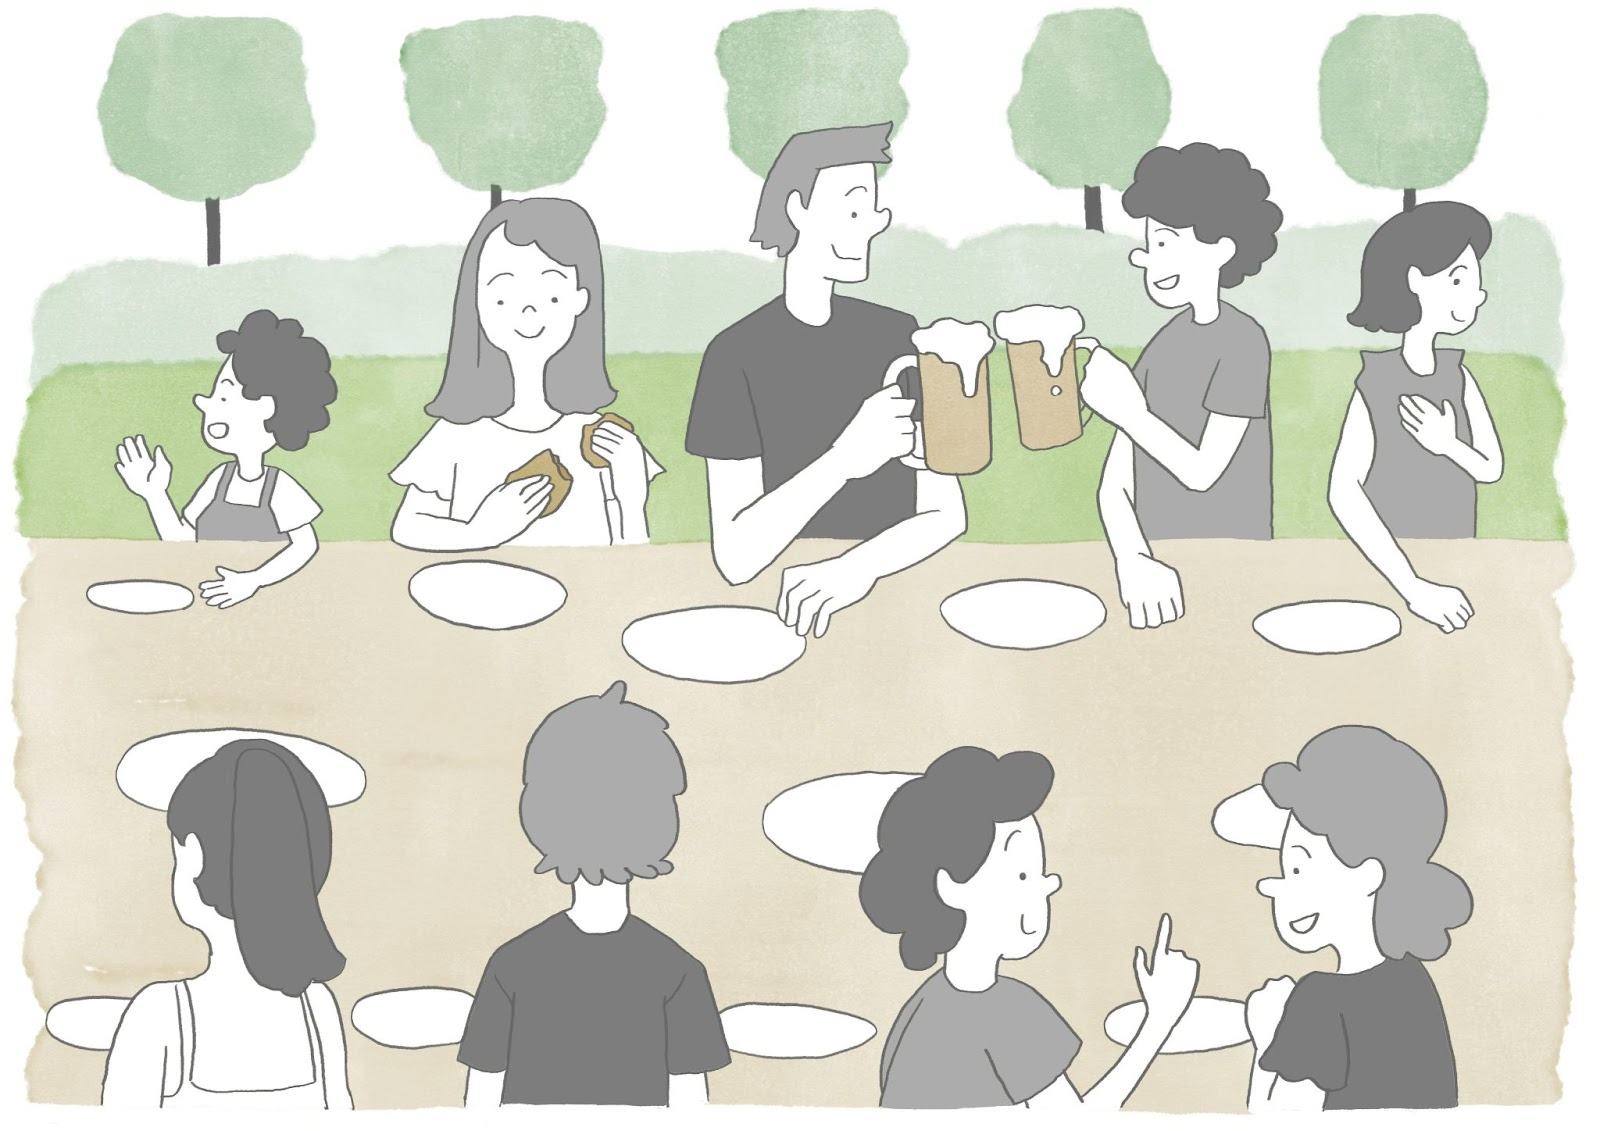 コミュニティ内では定期的な食事会などをすると良いだろう。食材を持ち寄ったり、一緒に作ったりすることで人との関係性が深まっていく。